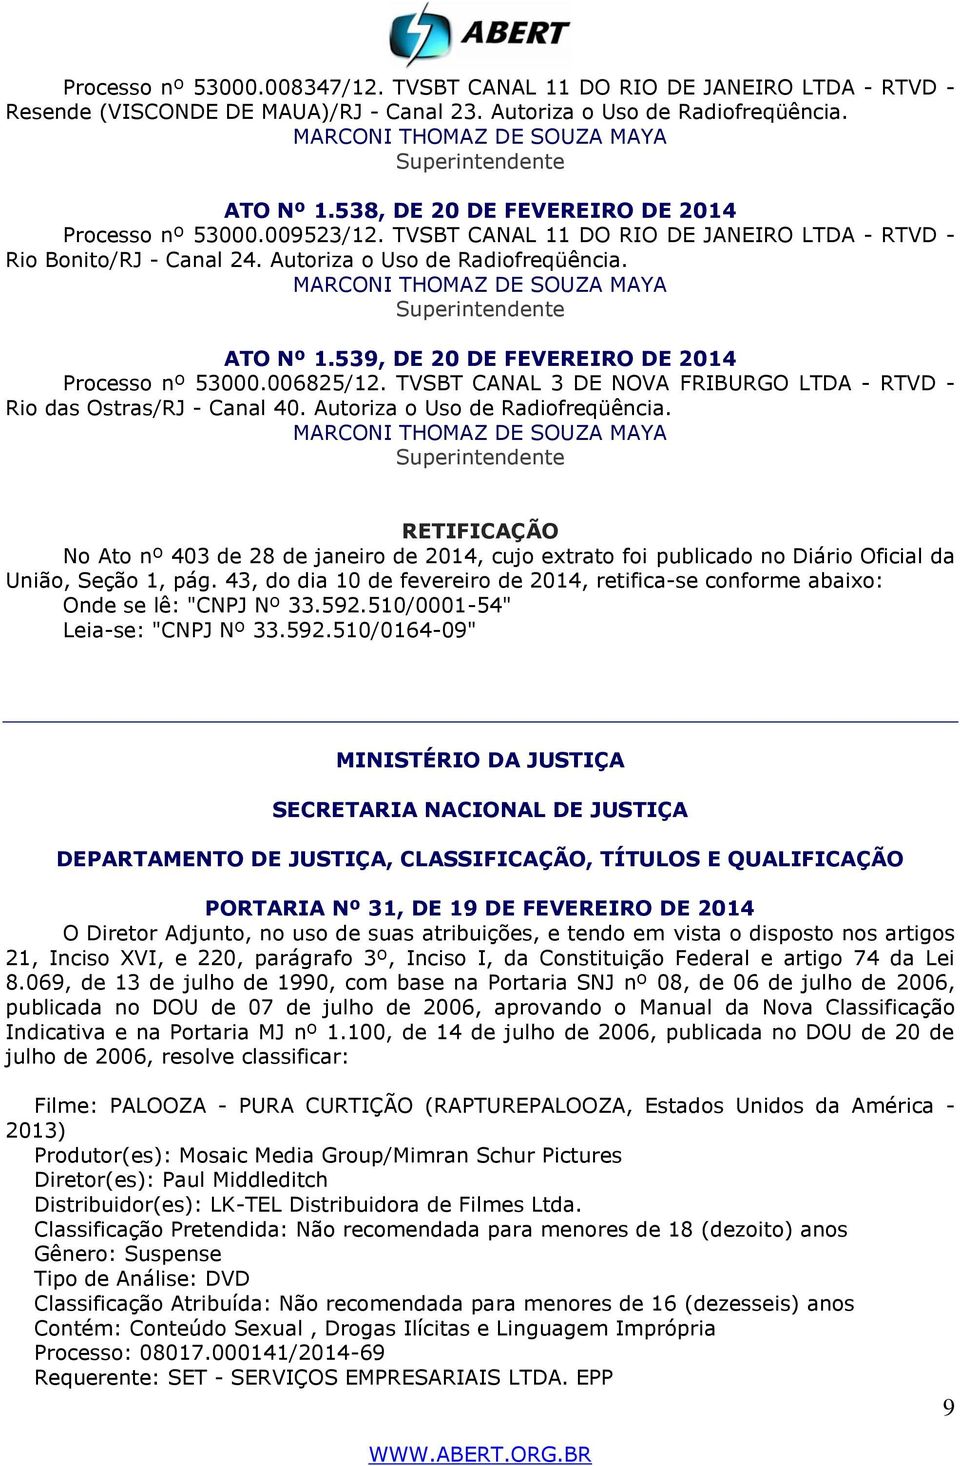 539, DE 20 DE FEVEREIRO DE 2014 Processo nº 53000.006825/12. TVSBT CANAL 3 DE NOVA FRIBURGO LTDA - RTVD - Rio das Ostras/RJ - Canal 40. Autoriza o Uso de Radiofreqüência.